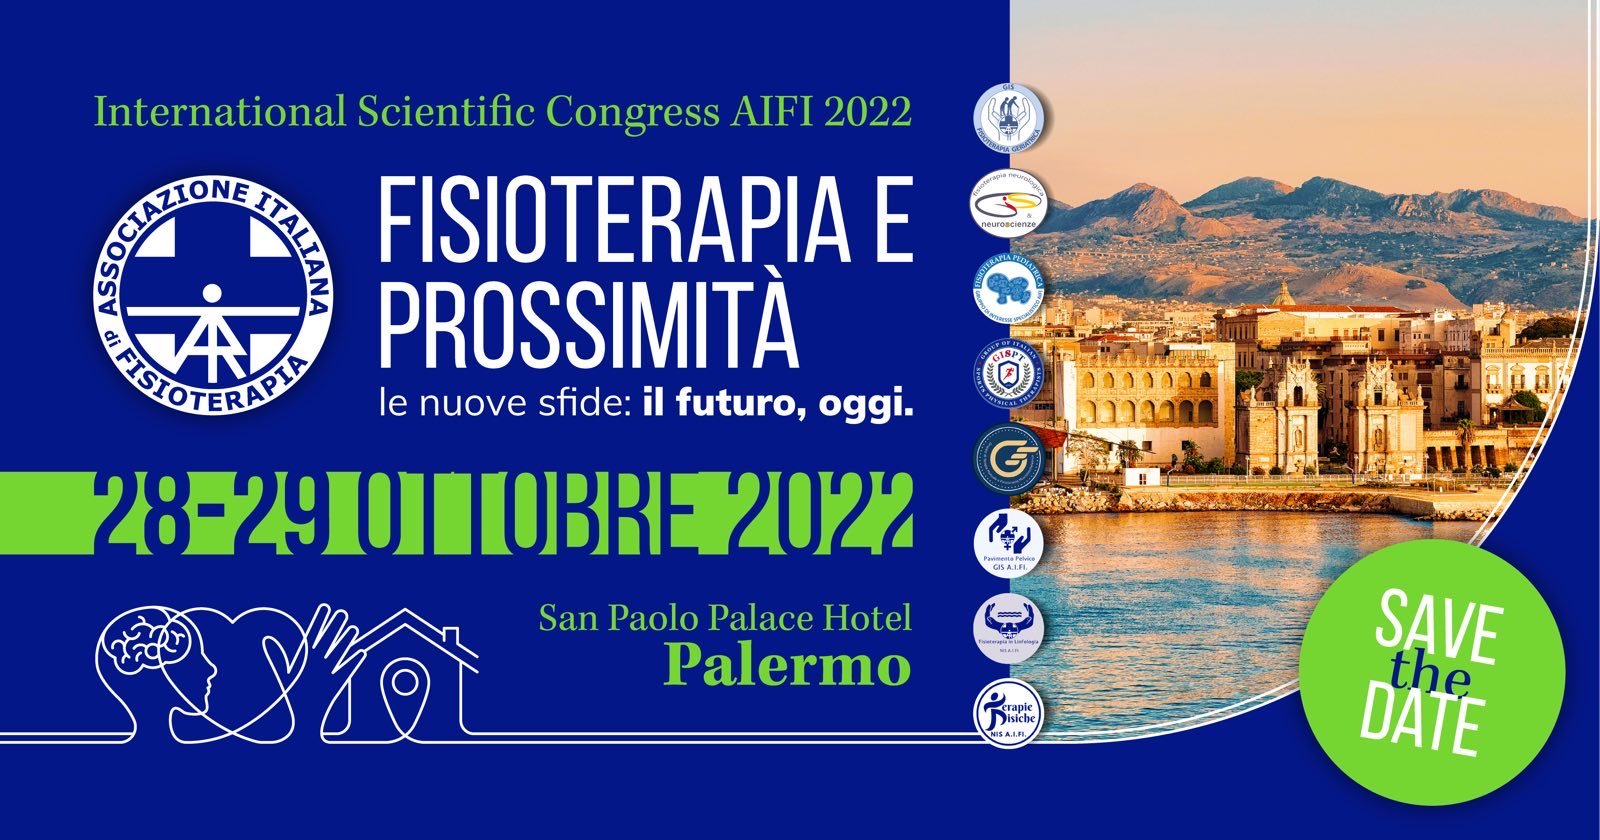 Iscrizioni aperte all’International Scientific Congress AIFI 2022: online il programma preliminare